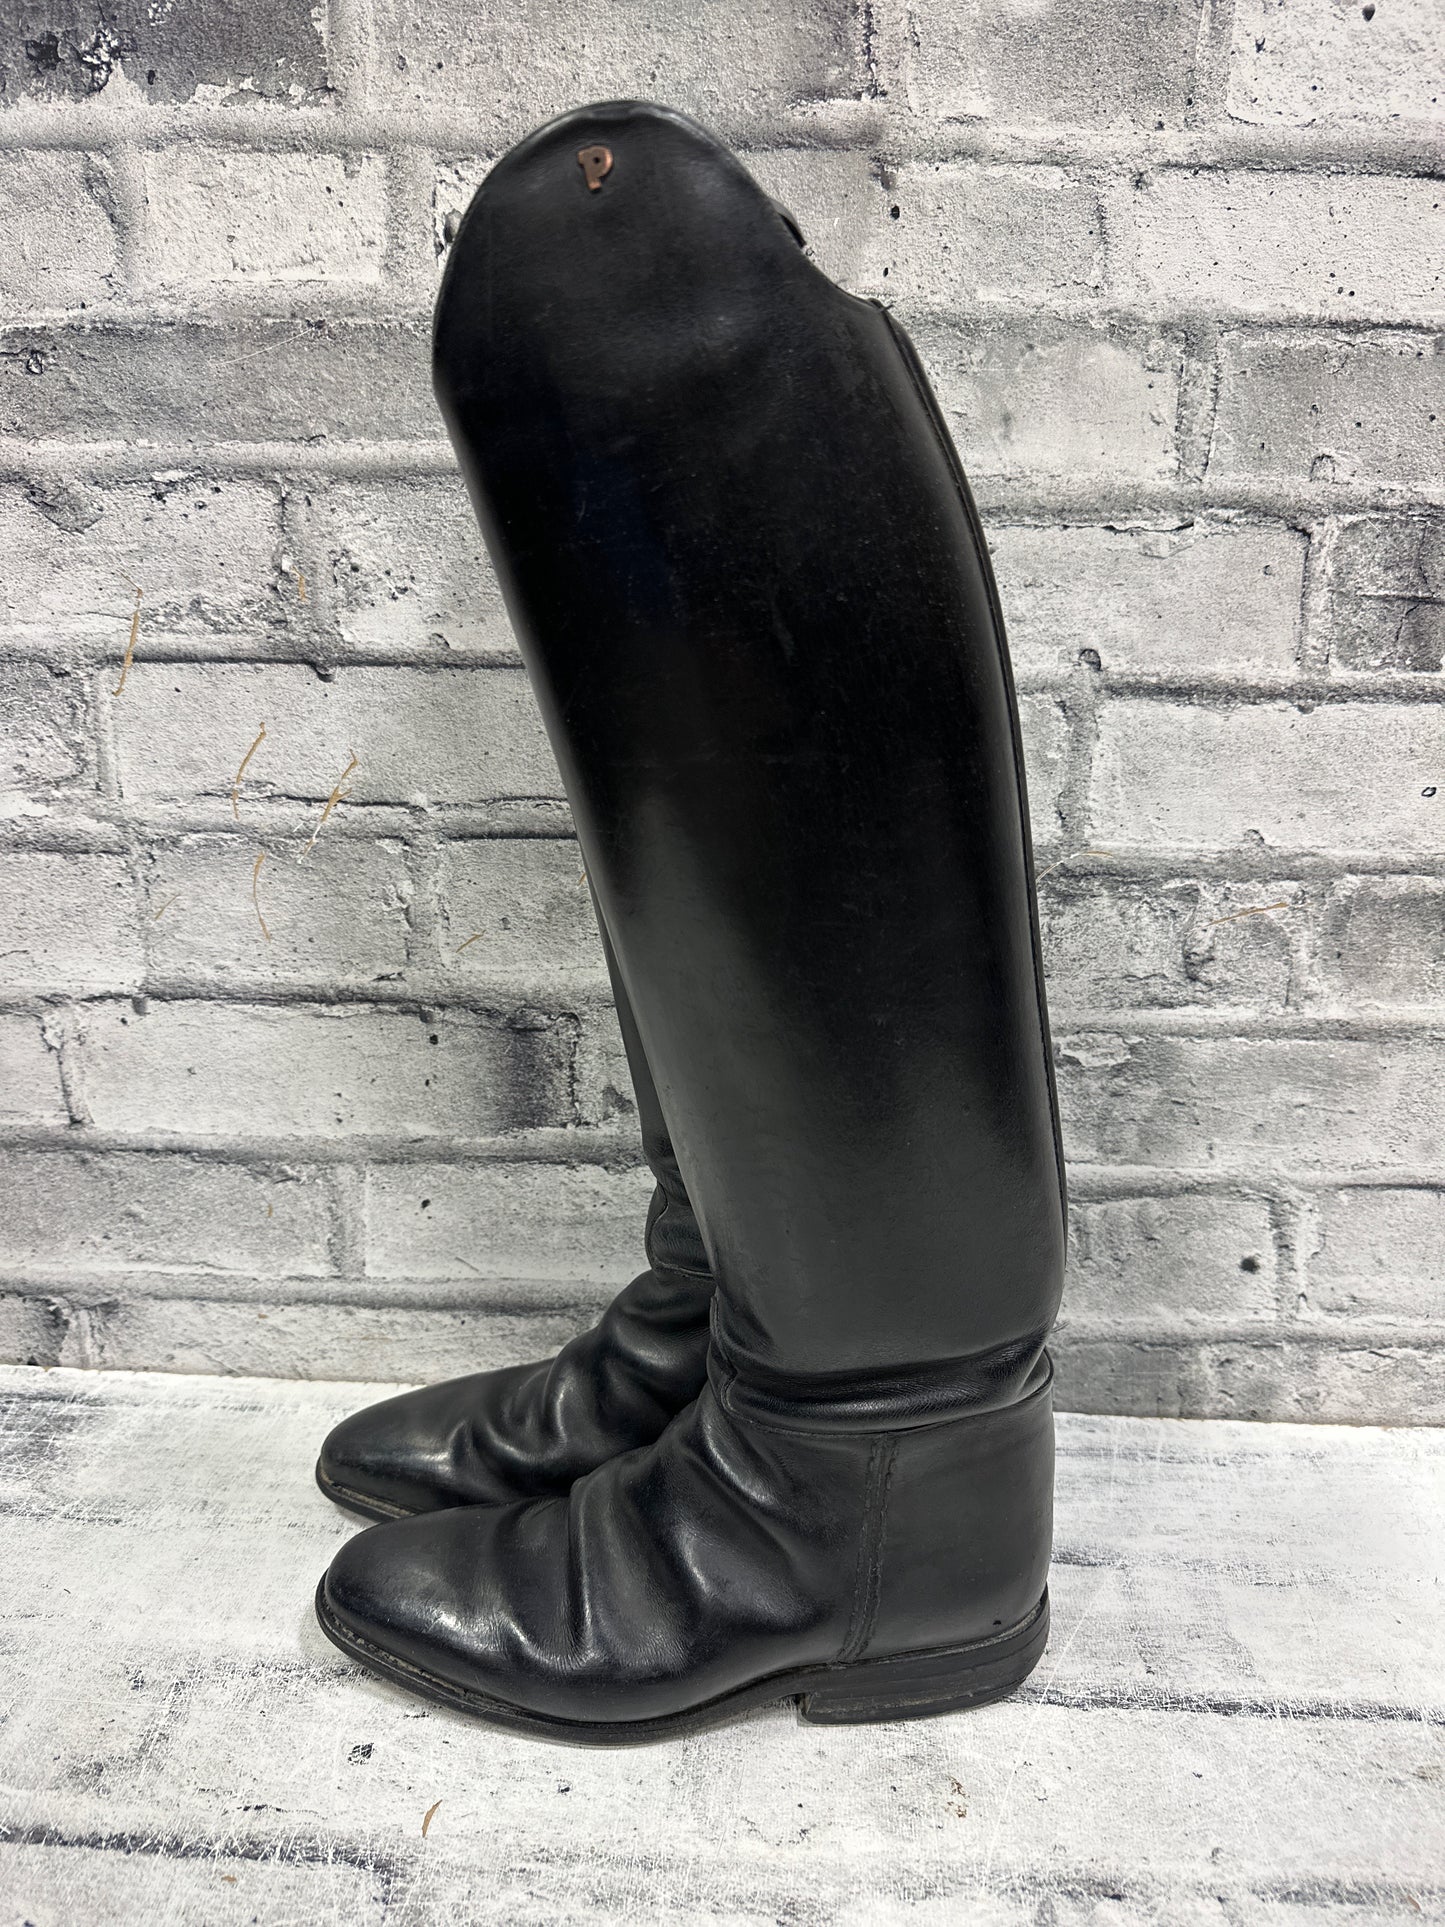 Petrie Dress Boots 9.5 17.5" Tall 14.5" Calf